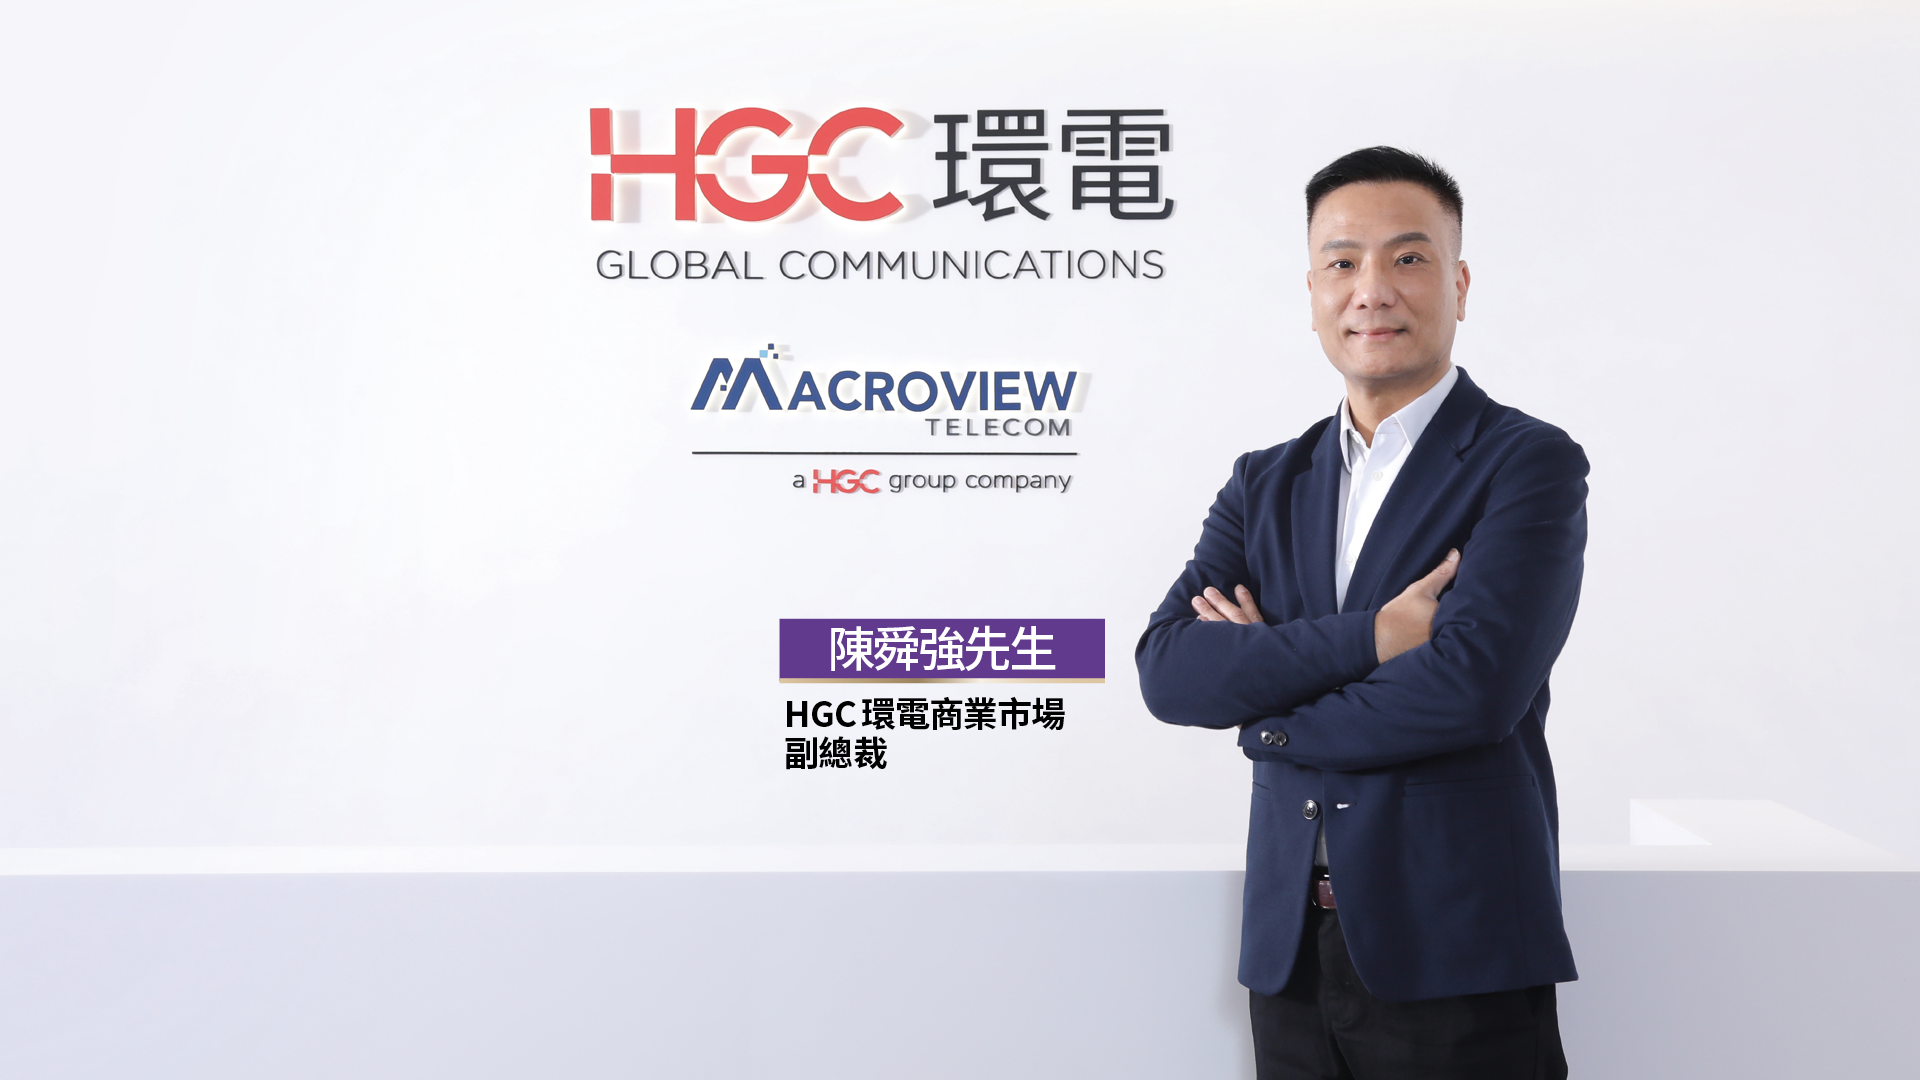 HGC 環電商業市場副總裁陳舜強先生